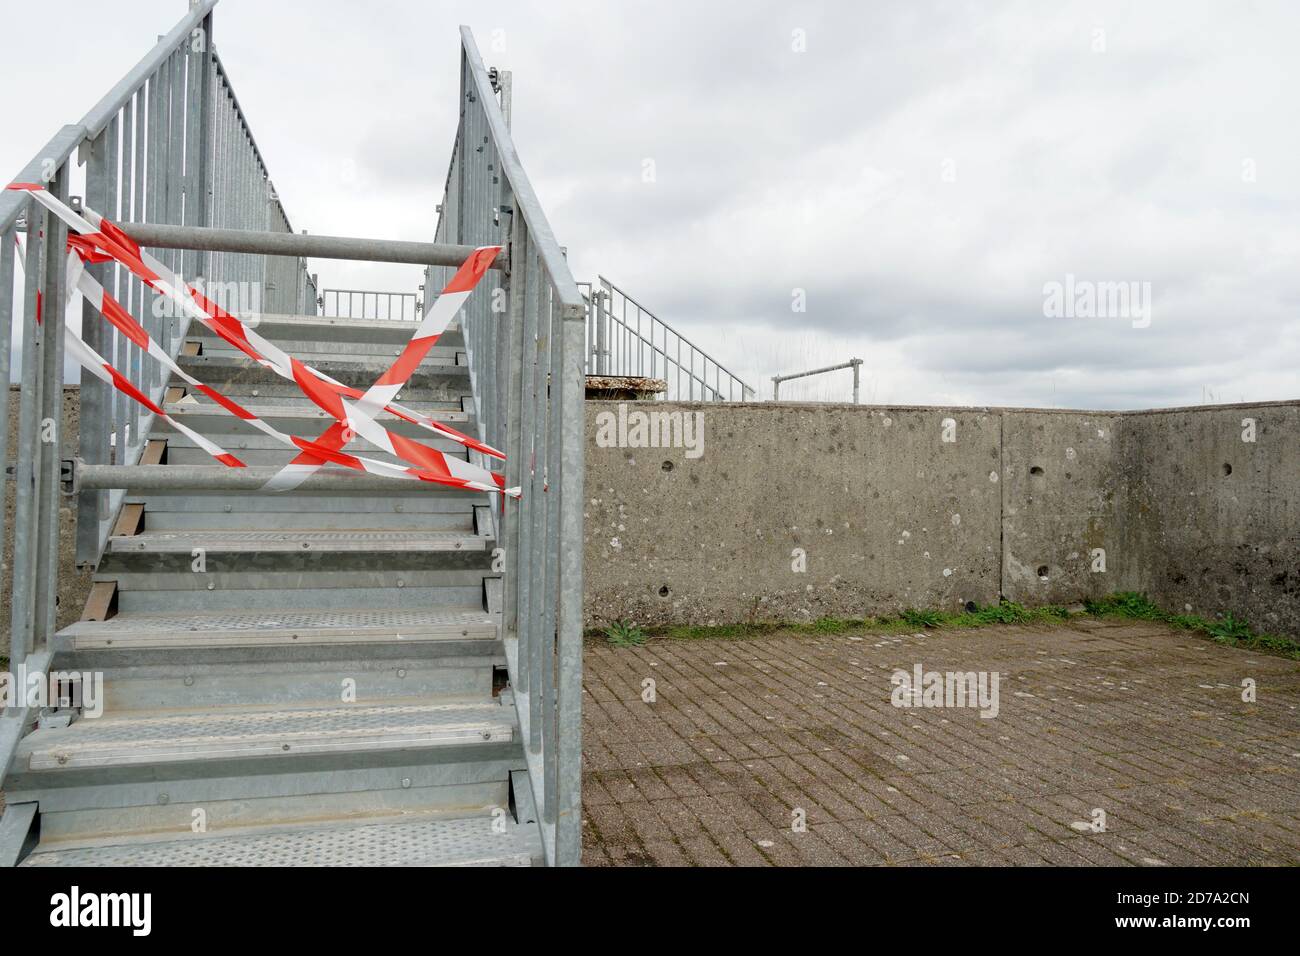 Der Zugang zur Metalltreppe ist mit Kunststoff-Sperrband in rot und weiß behindert. Aussichtsplattform in der Festung oder Zitadelle in Belfort, Frankreich. Stockfoto